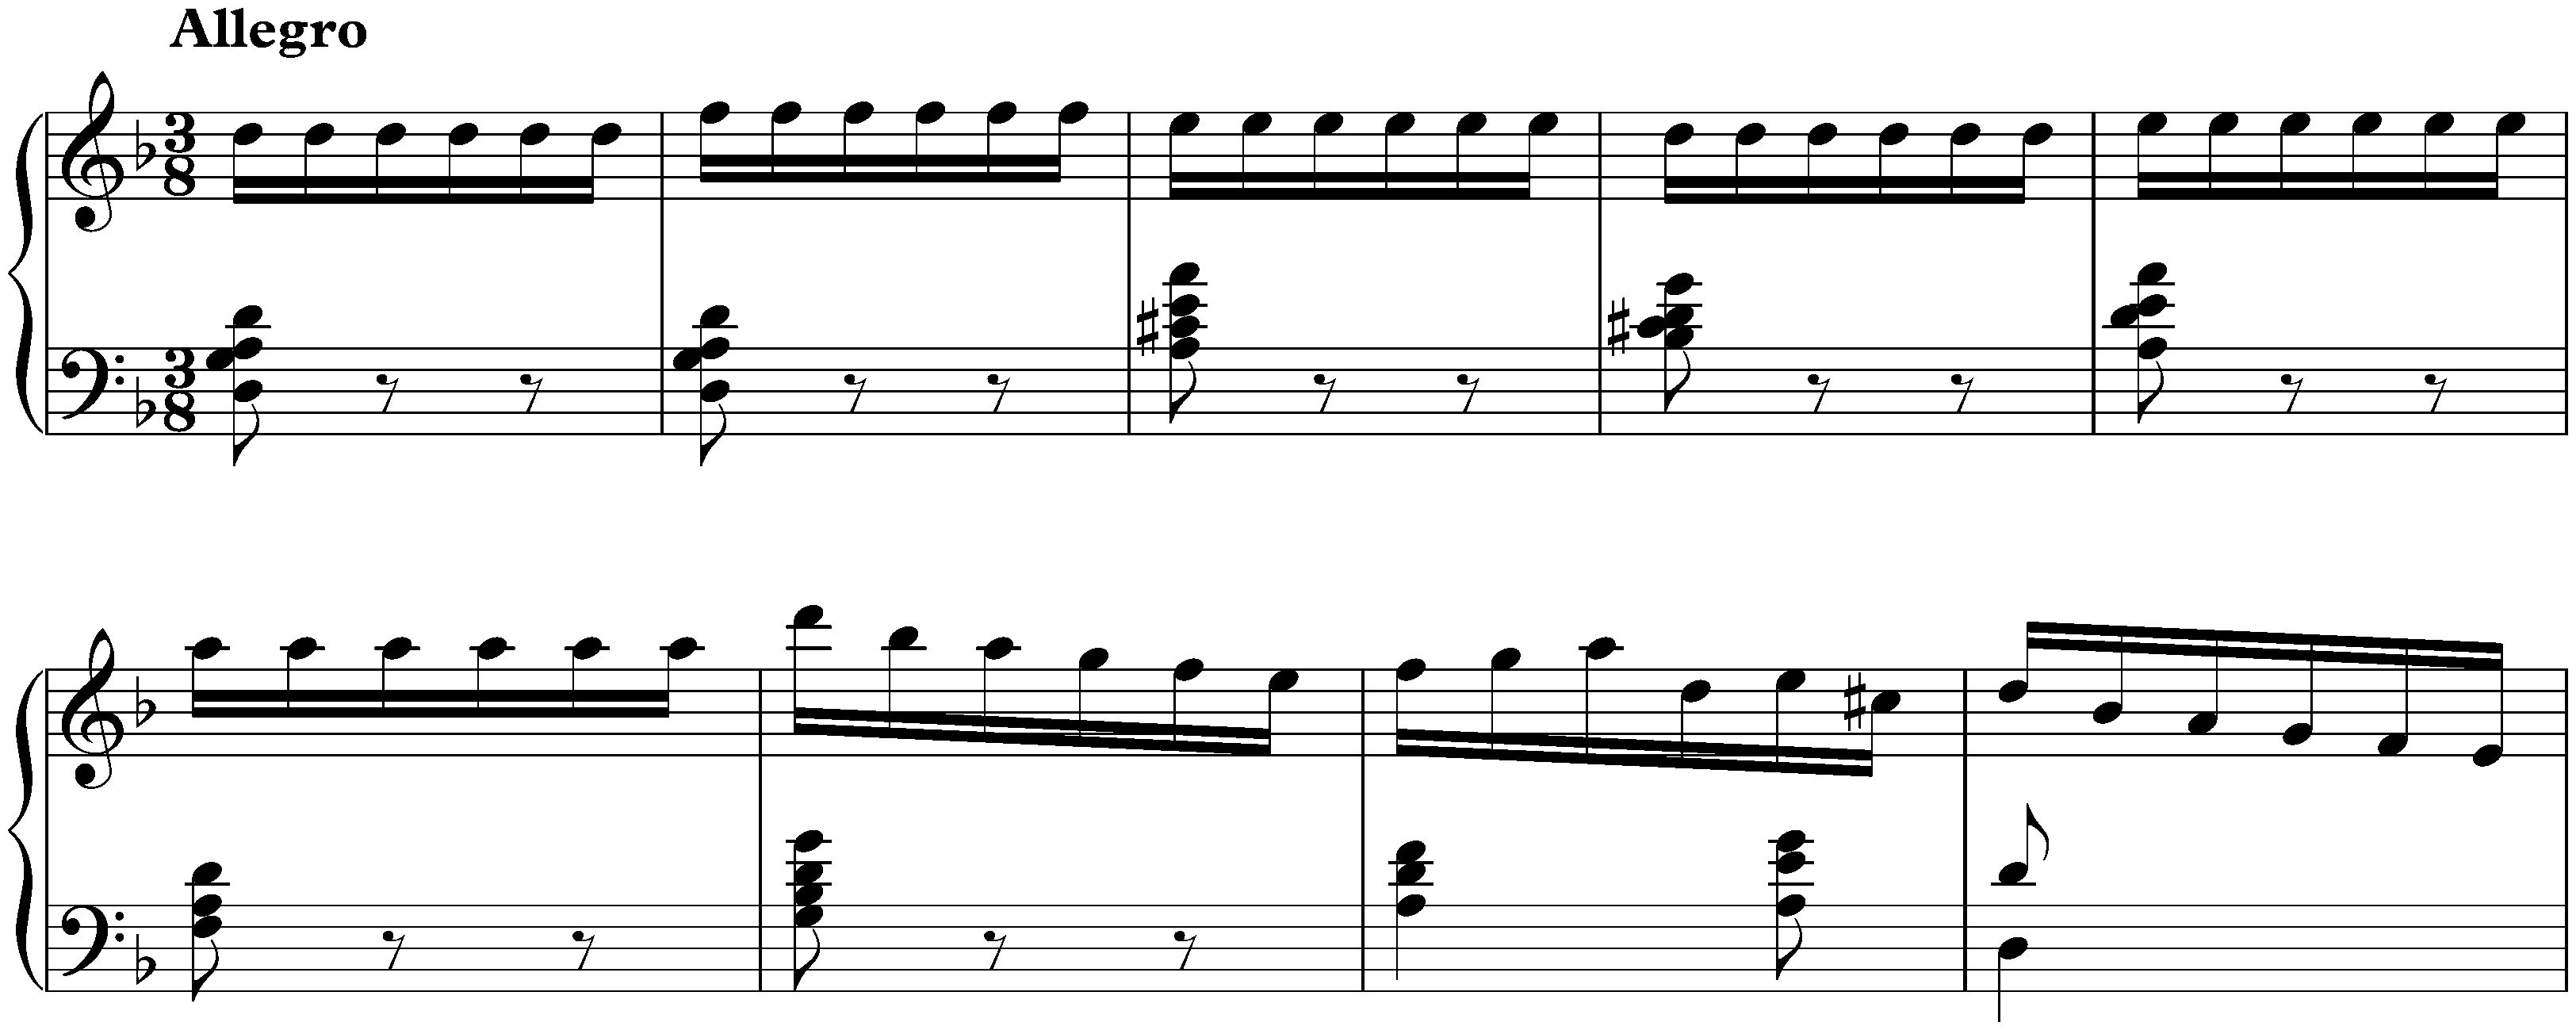 Sonata in D minor, K. 141